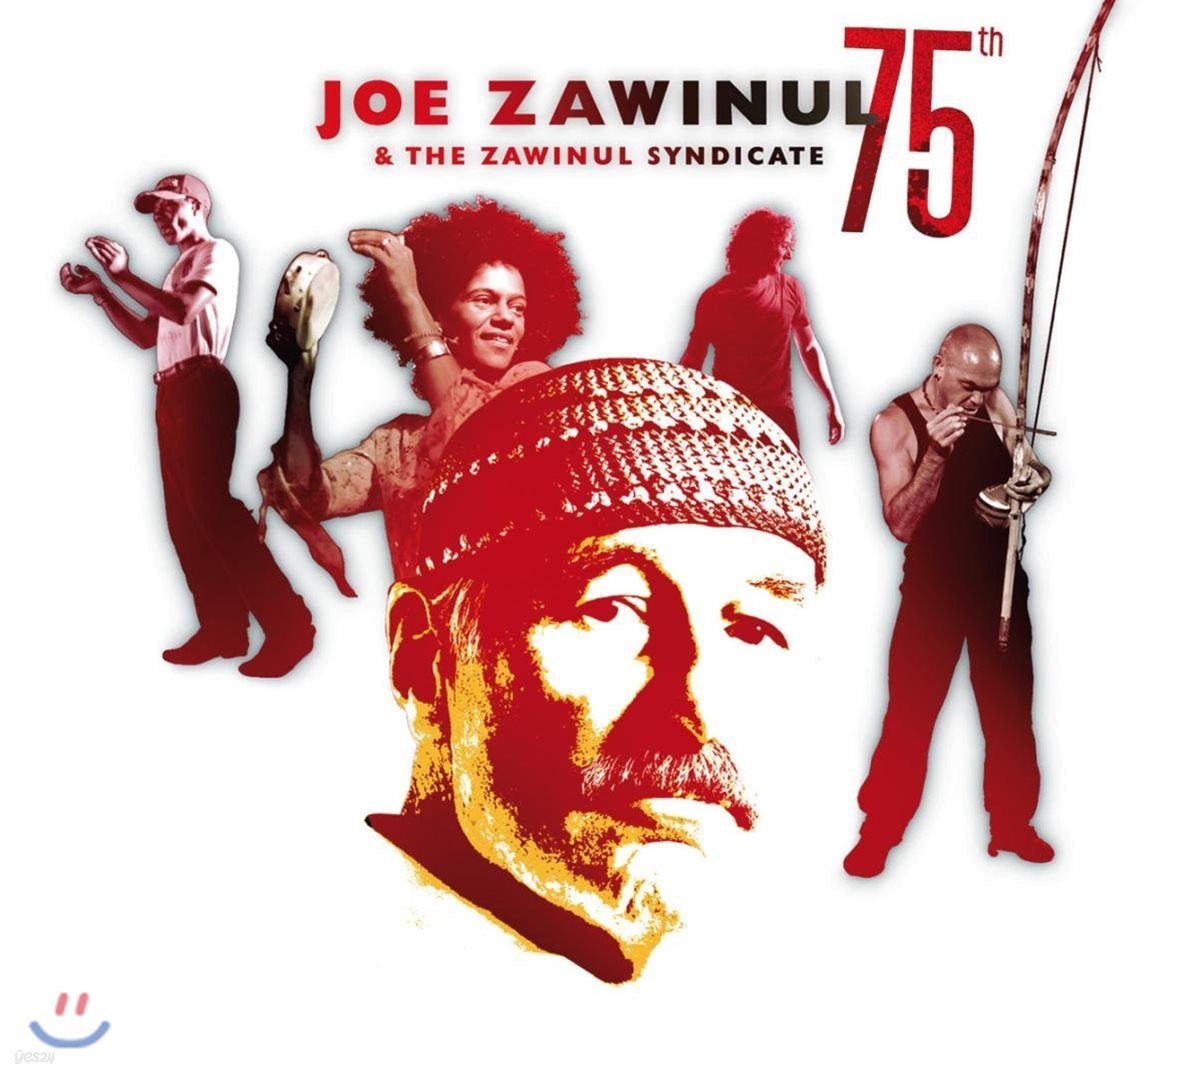 Joe Zawinul & The Zawinul Syndicate (조 자비눌) - 75th [2 LP]